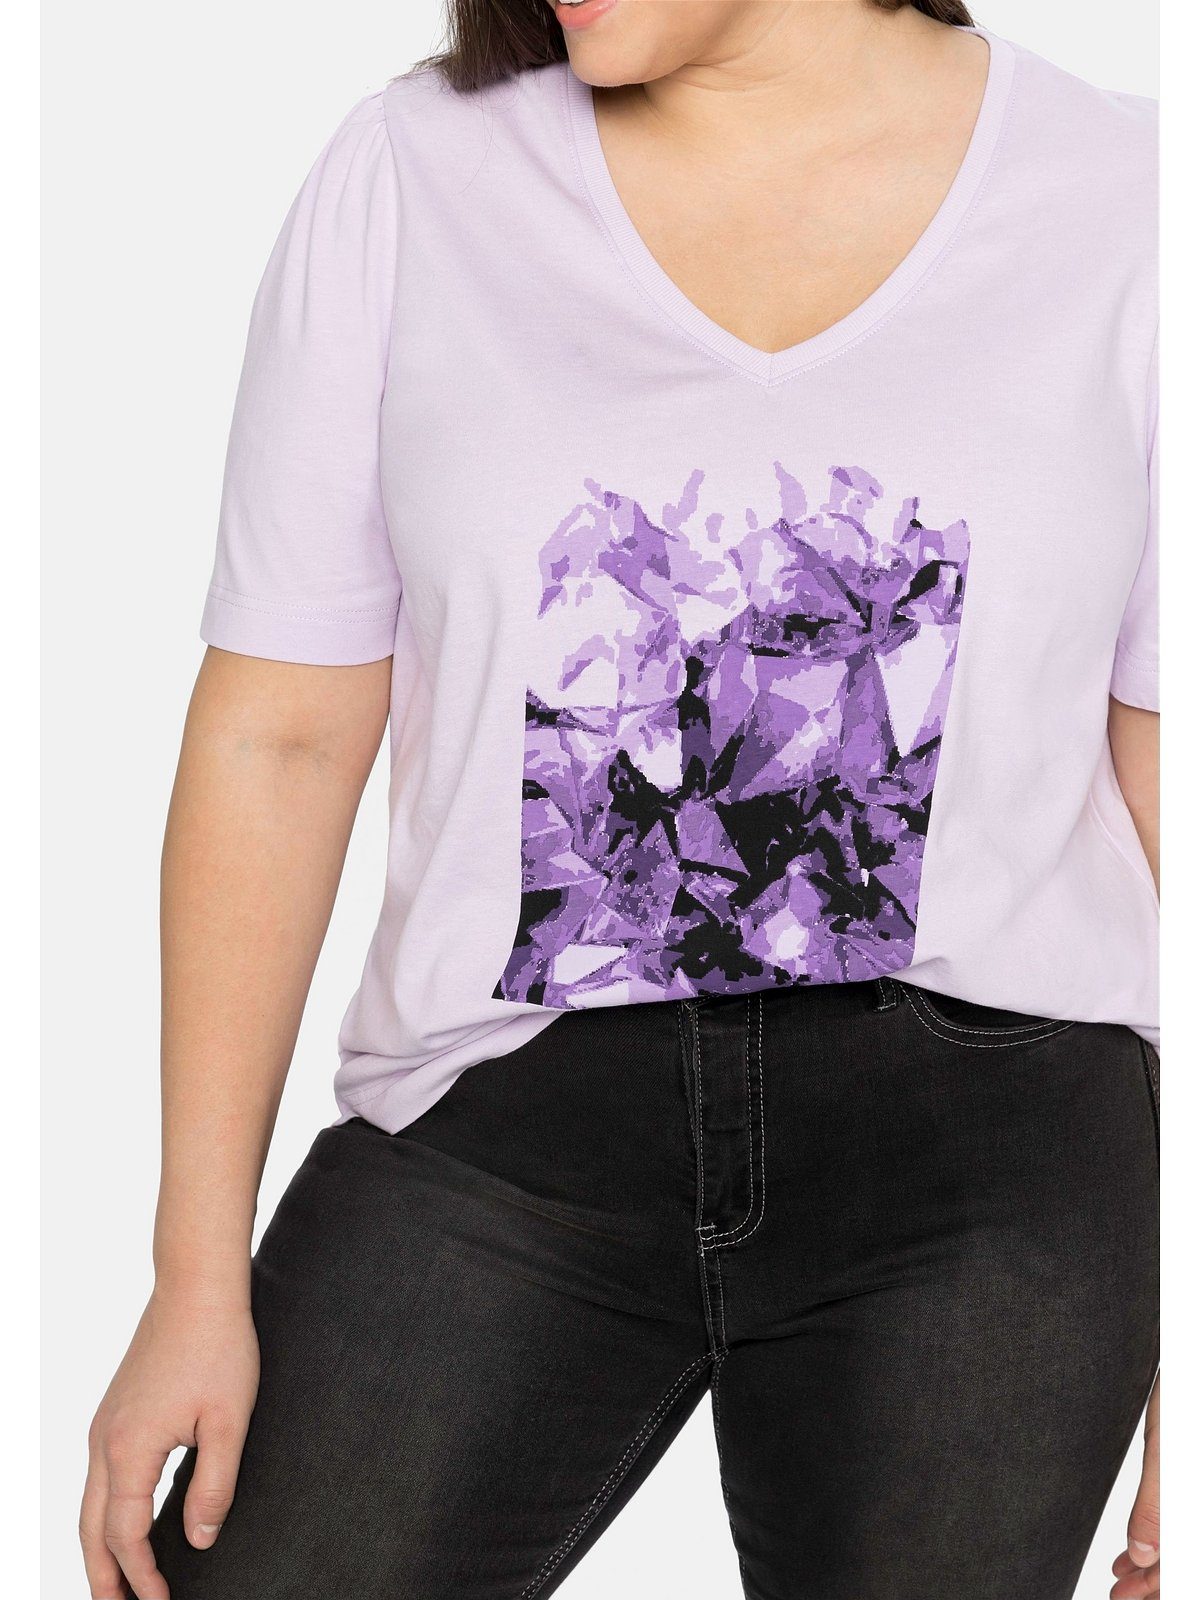 Frontdruck lavendel aus T-Shirt Größen Große Baumwolle mit Sheego